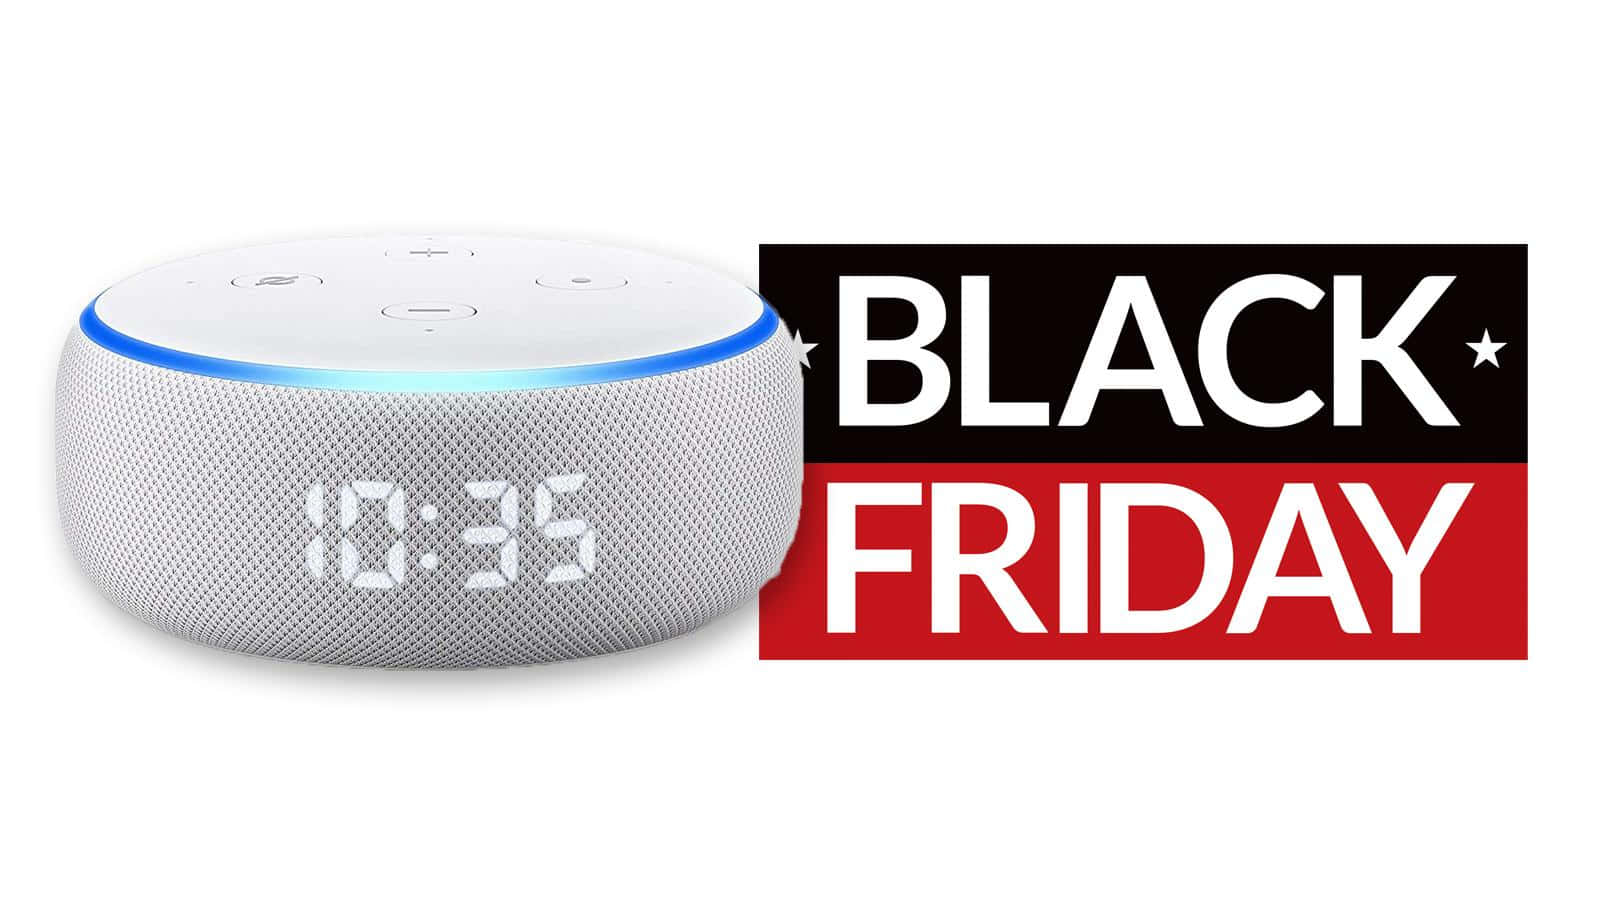 Amazonecho Dot Black Friday - Offerte Speciali Per Amazon Echo Dot Durante Il Black Friday